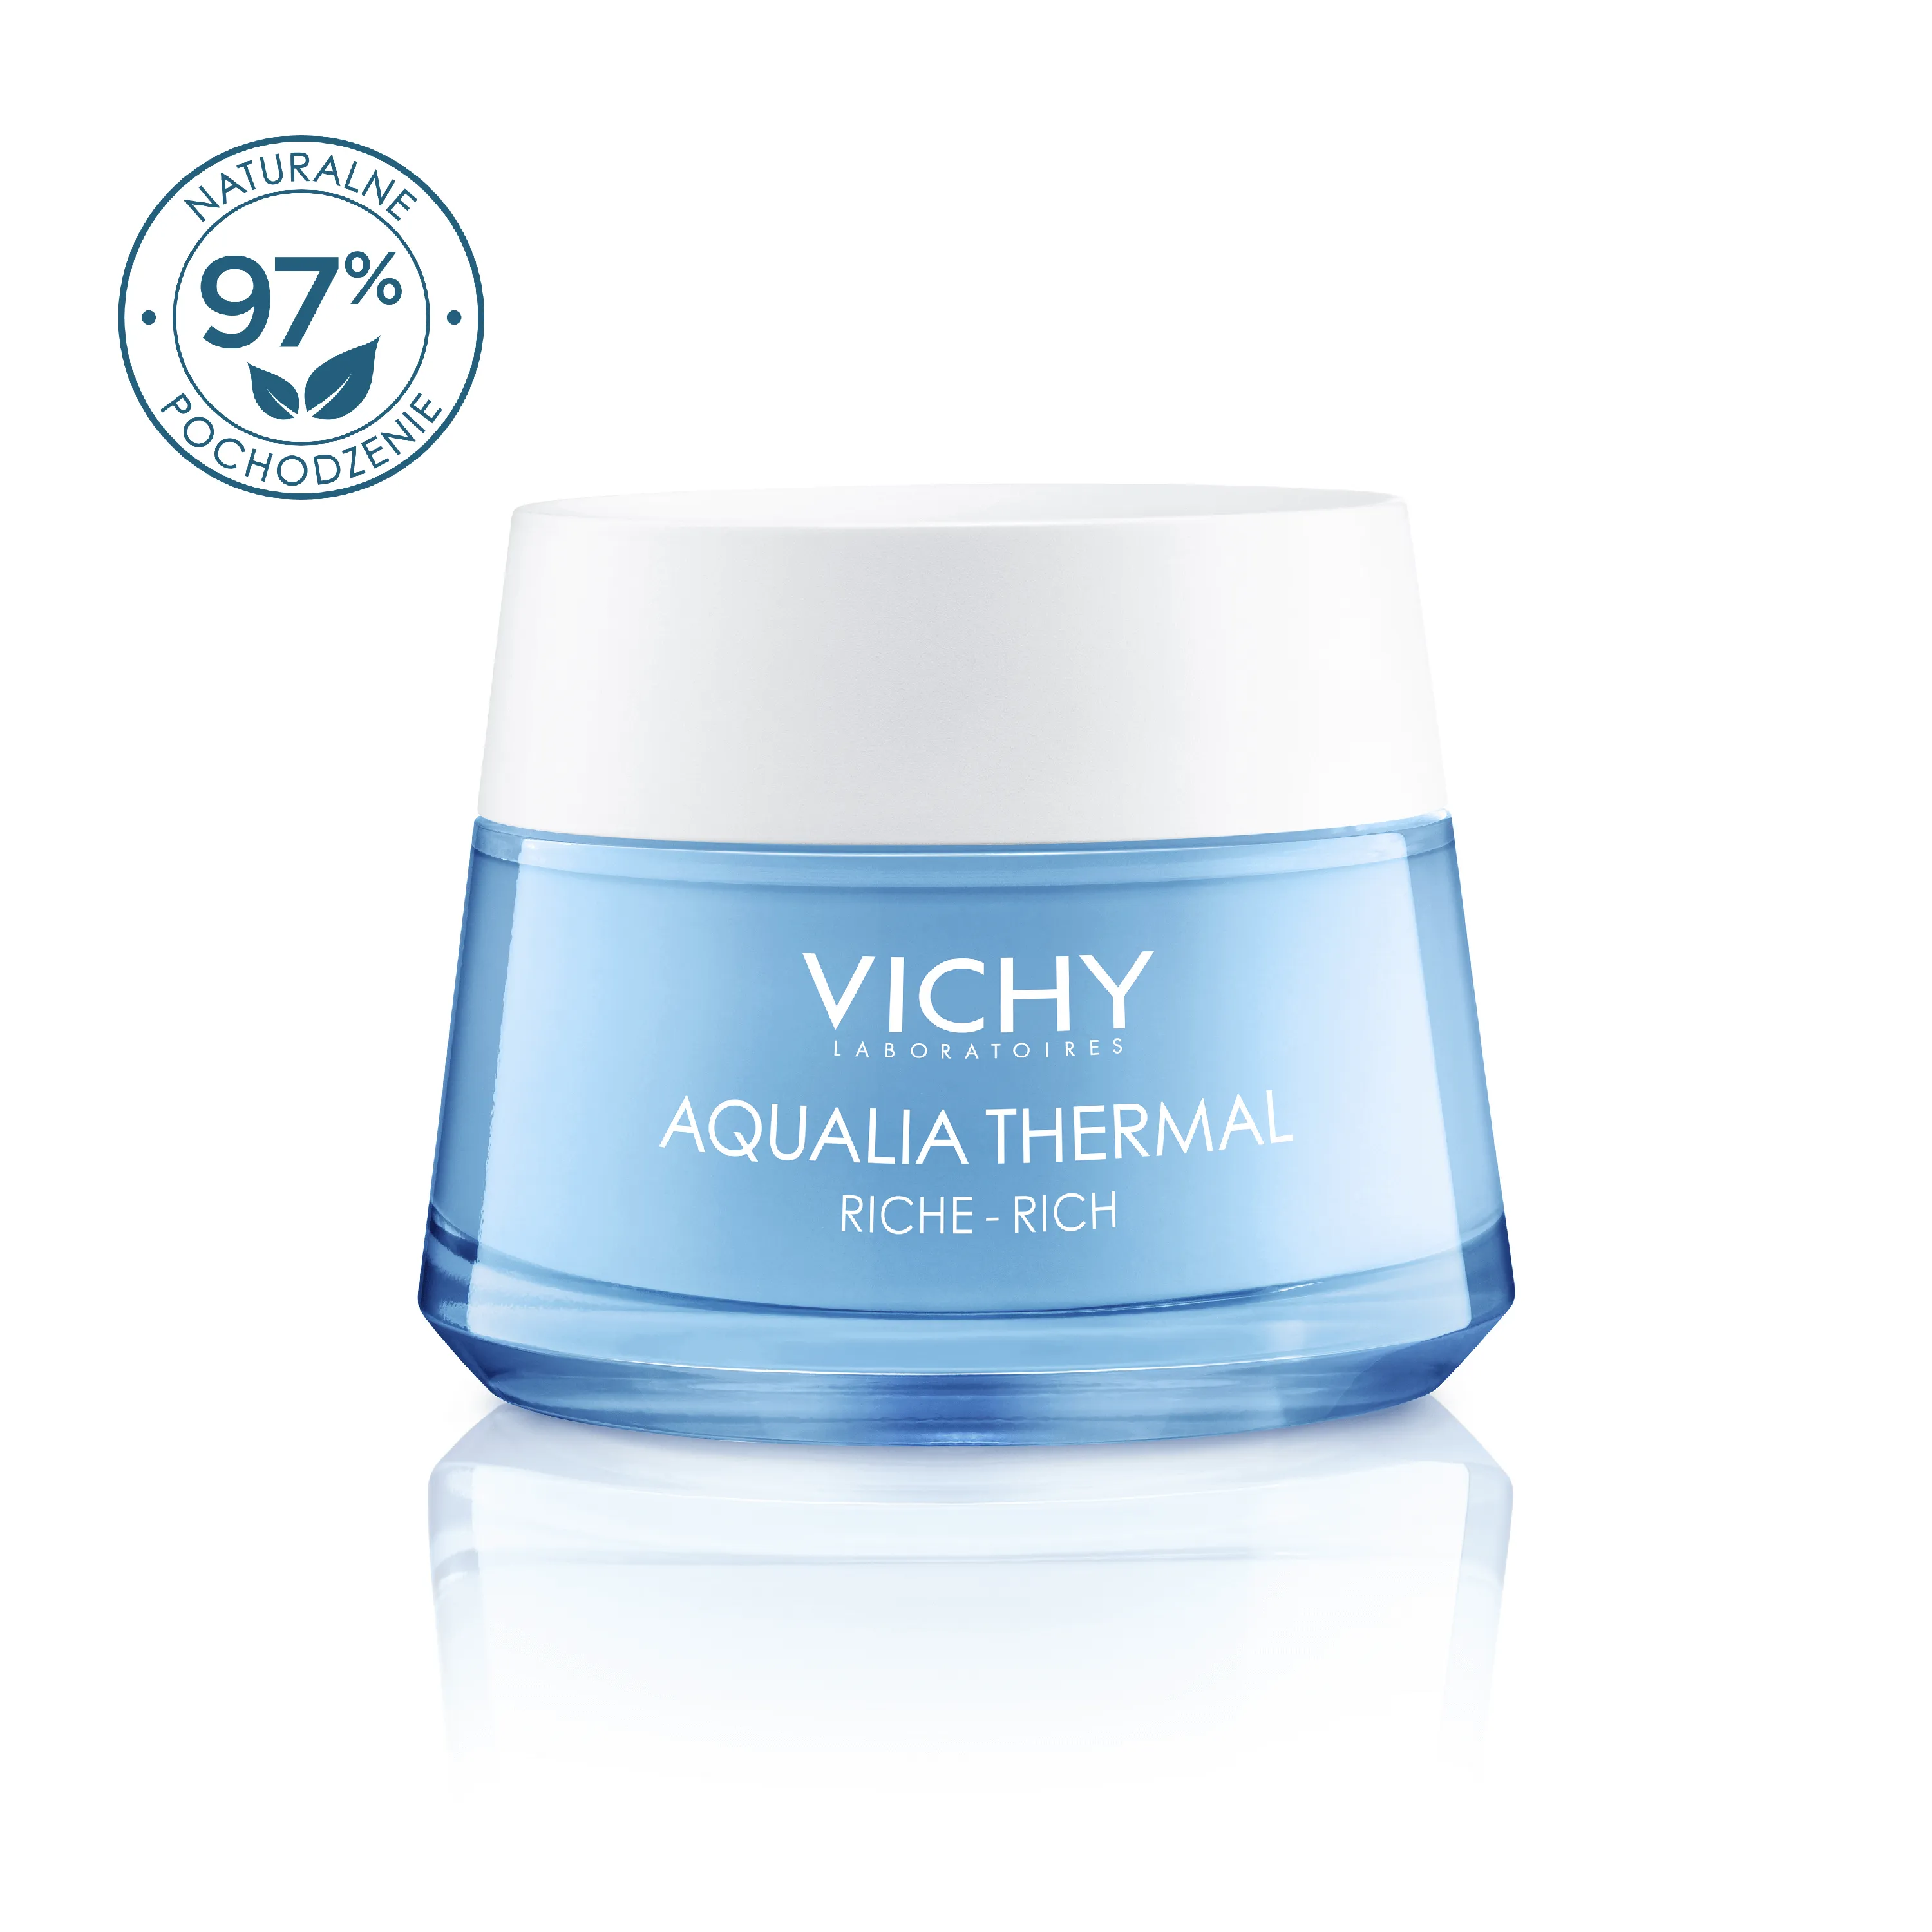 Vichy Aqualia Thermal, bogaty krem nawilżający, 50 ml 